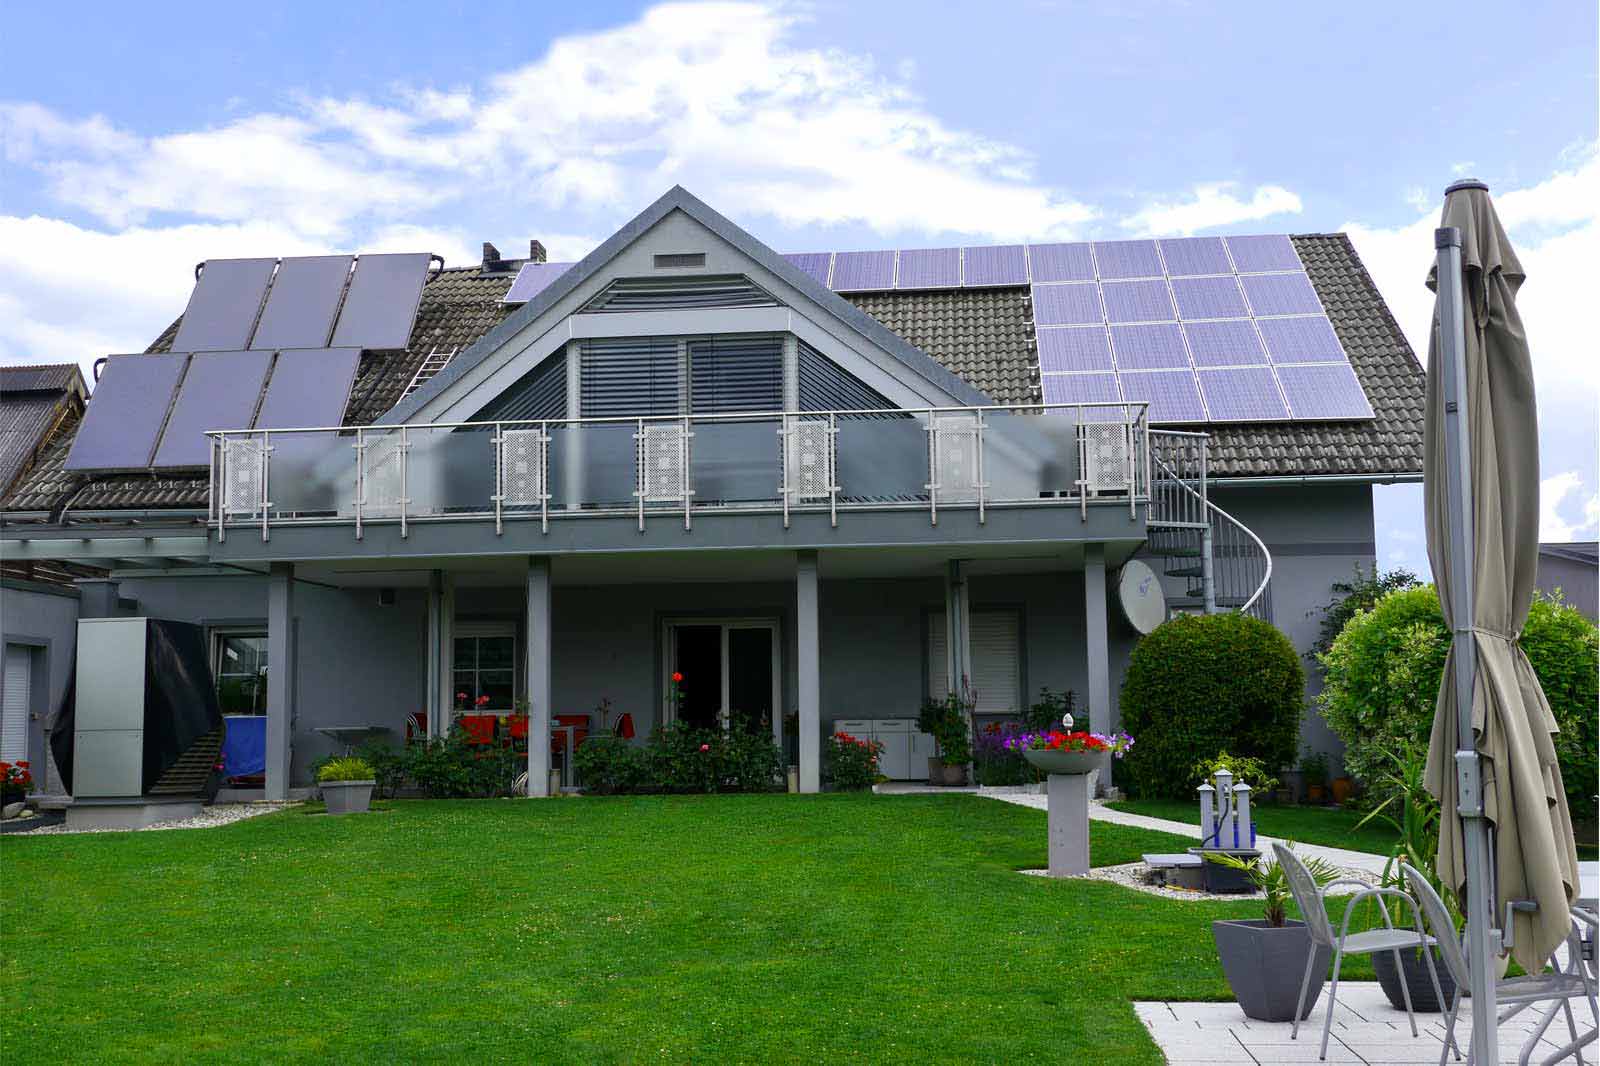 Blaugraues Einfamilienhaus mit Wärmepumpe und Photovoltaik am Dach